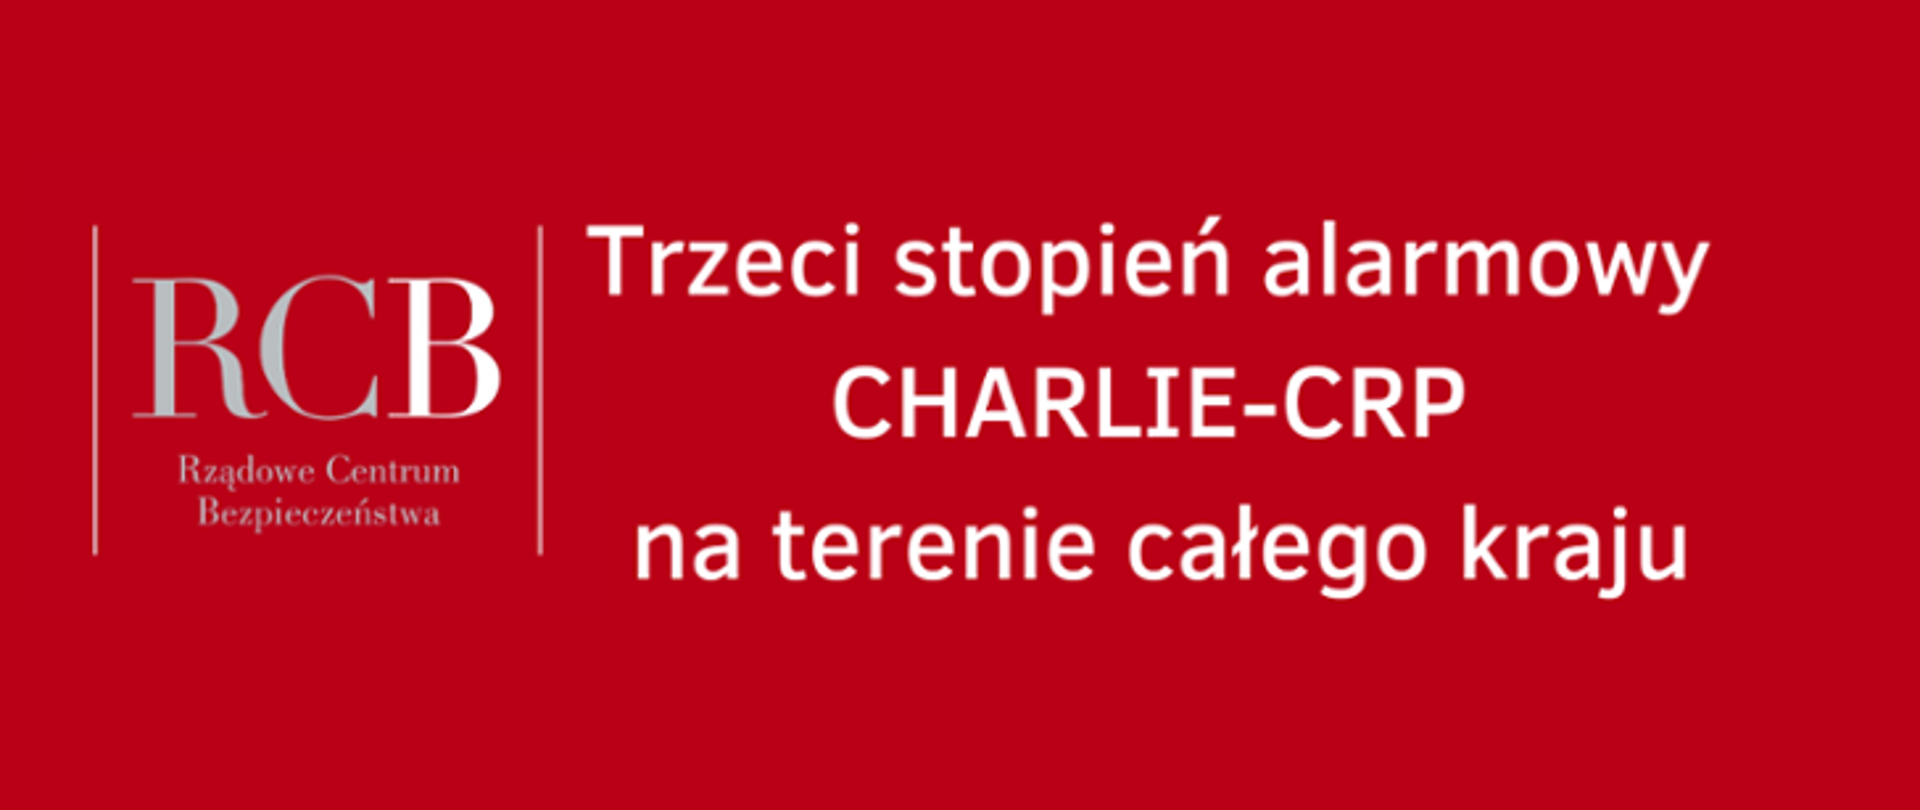 Trzeci stopień alarmowy CHARLIE_CRP na terenie całego kraju